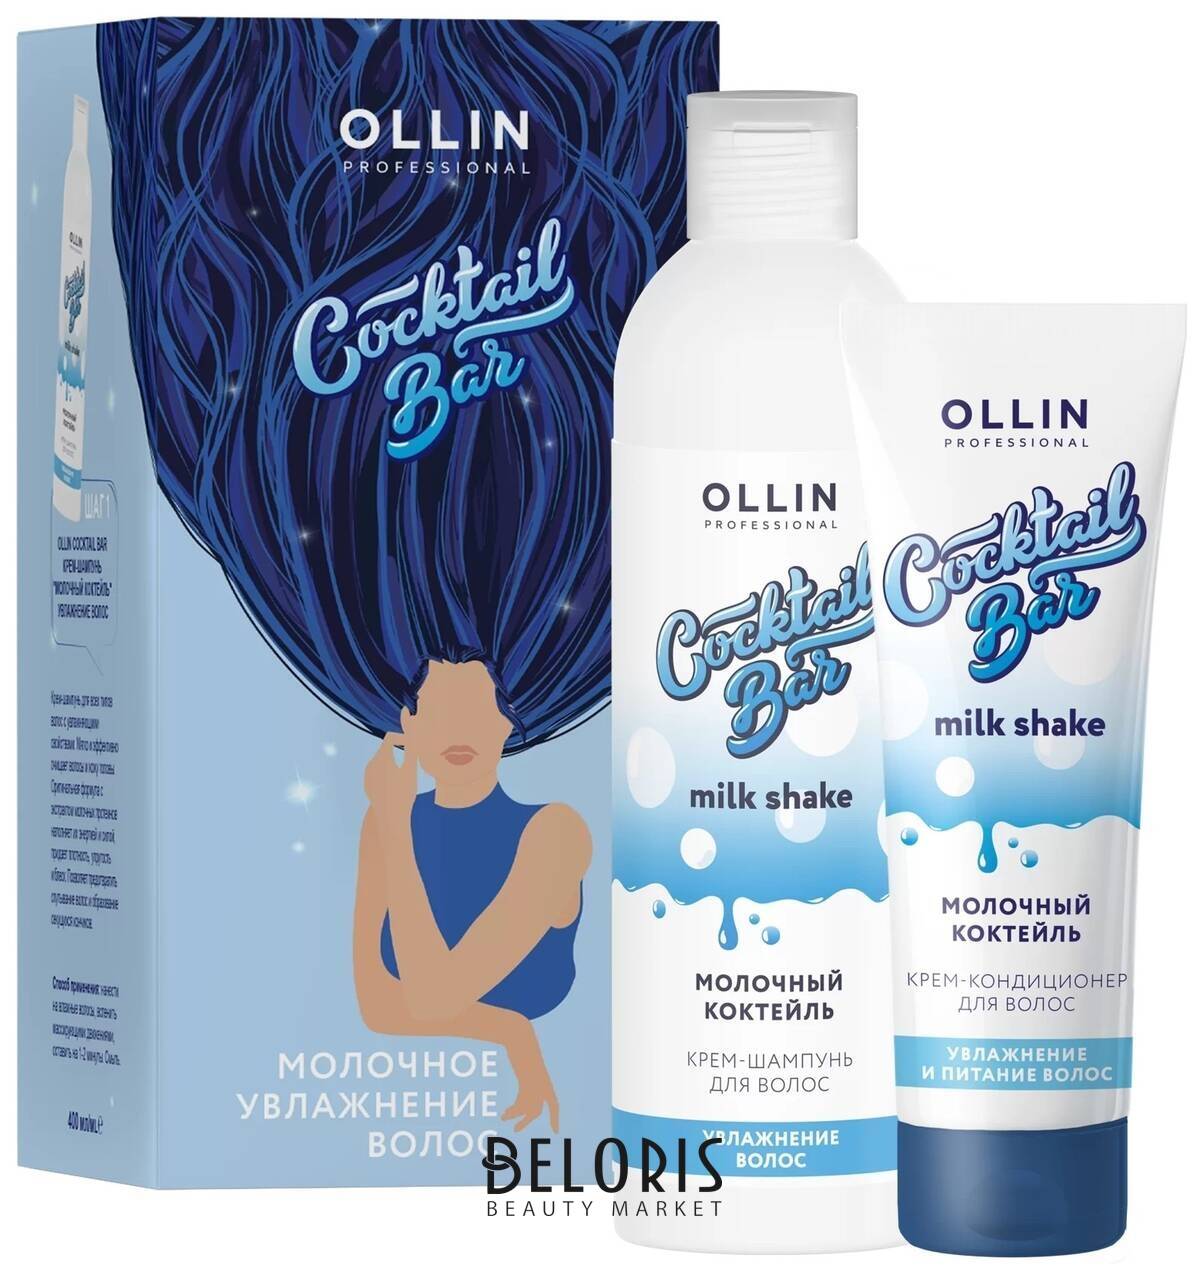 Набор для ухода за волосами Крем-шампунь + Крем-кондиционер Молочный коктейль OLLIN Professional Coctail bar